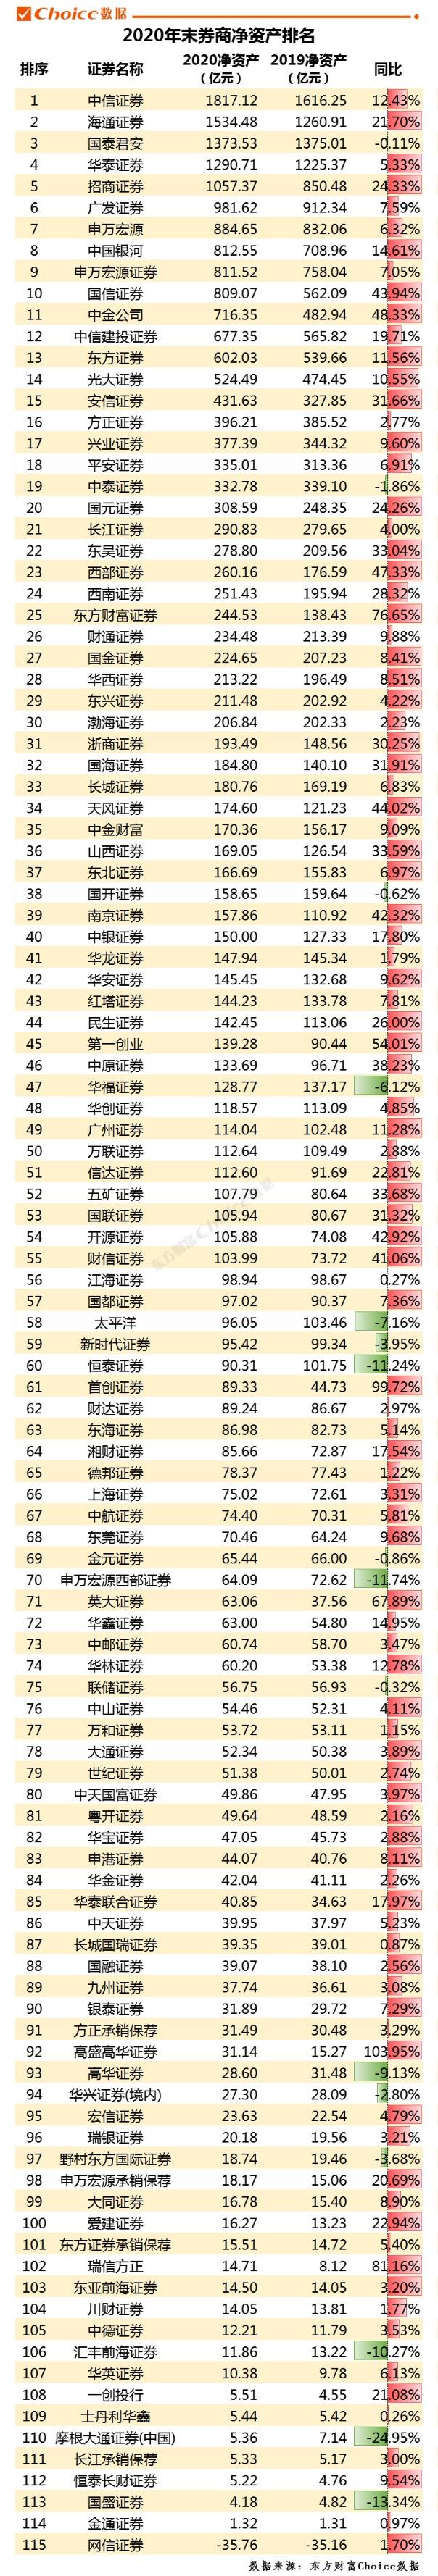 中国券商排名